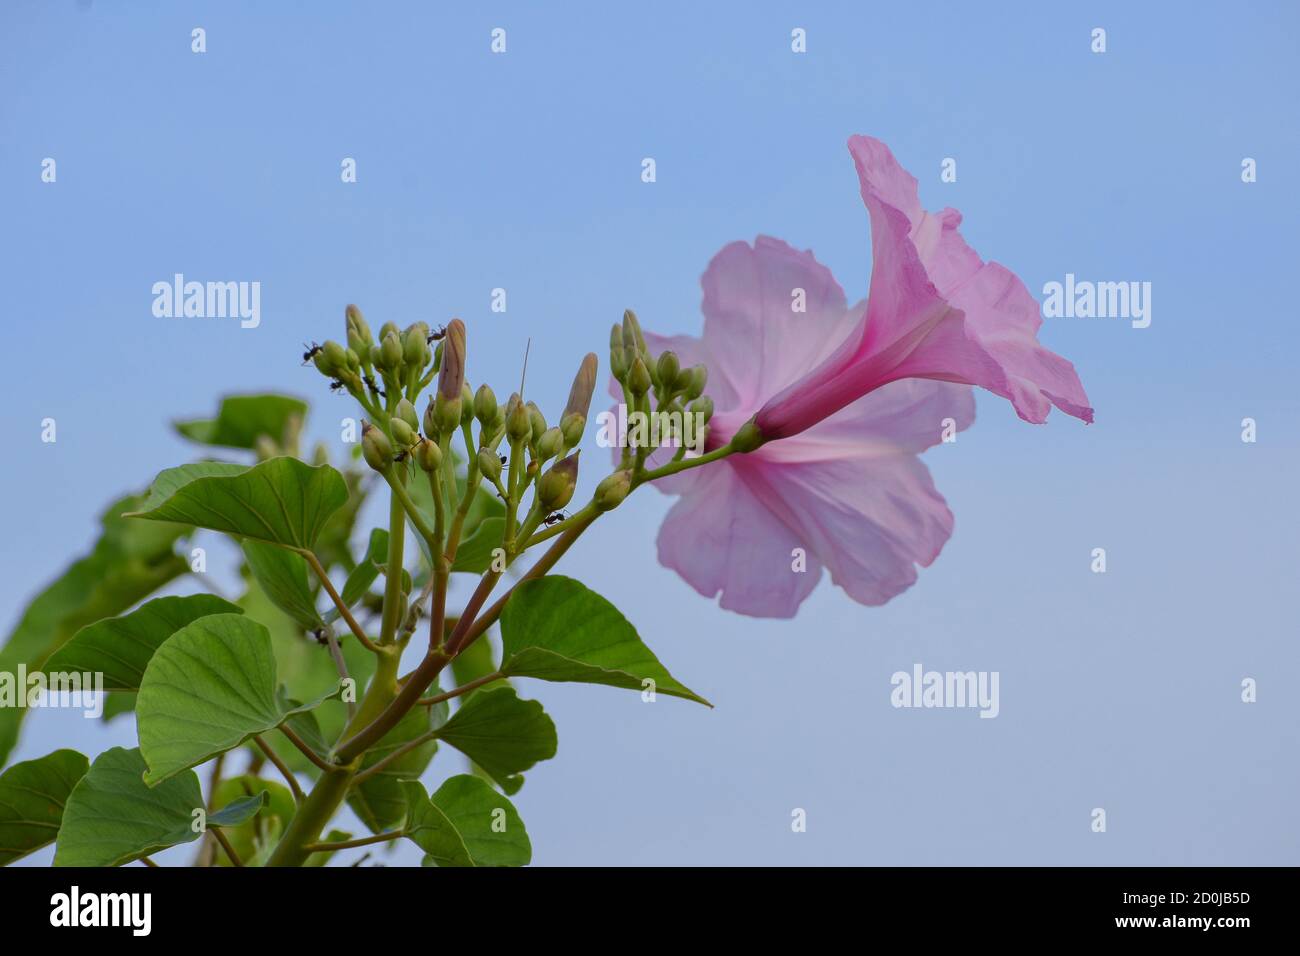 Belle plante rose fraîche gloire matin (ipomoea carnea) avec fleurs et bourgeons dans fond bleu ciel, plante médicinale, toxique toxique toxique toxique Banque D'Images